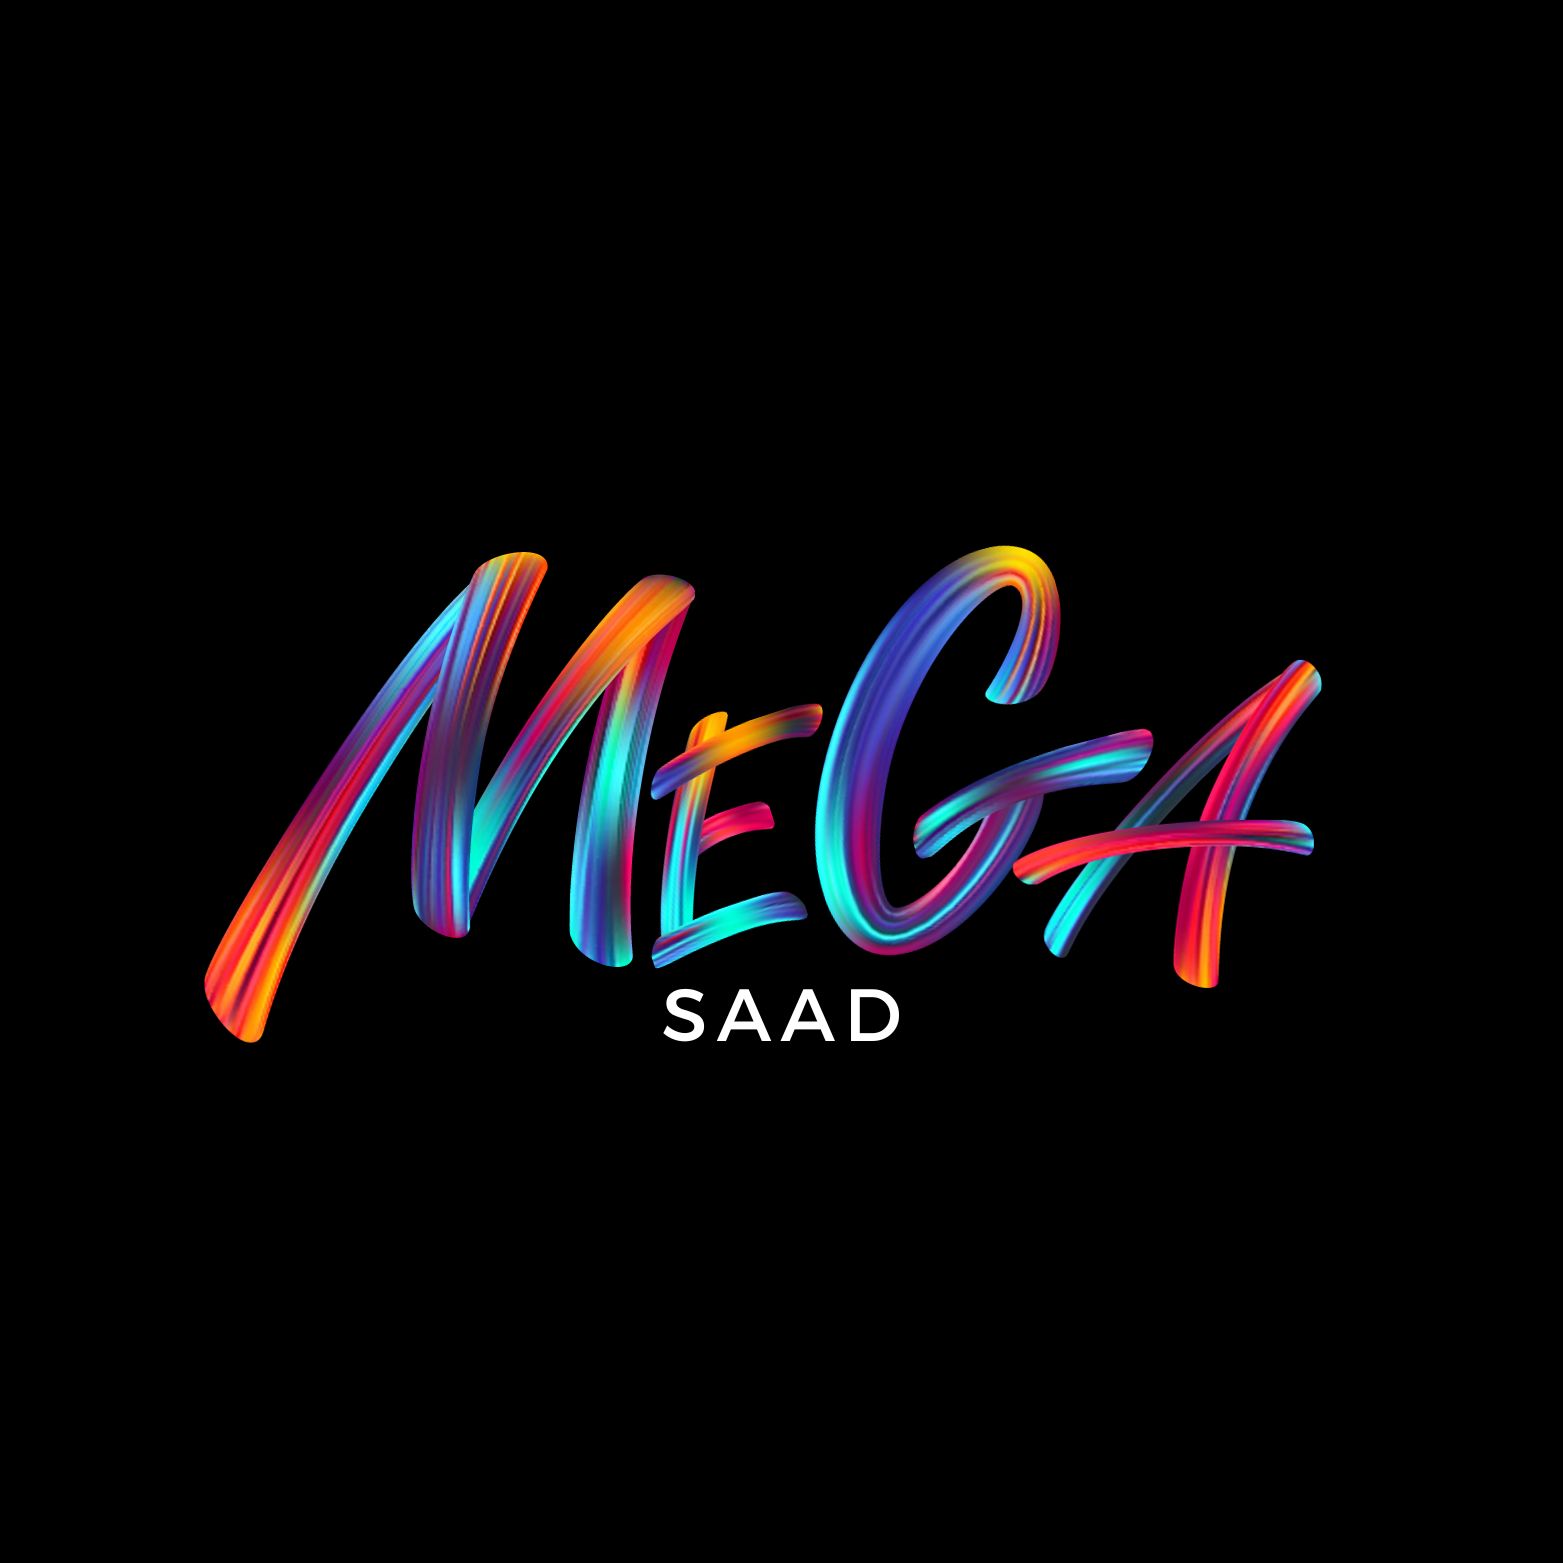 Mega Saad